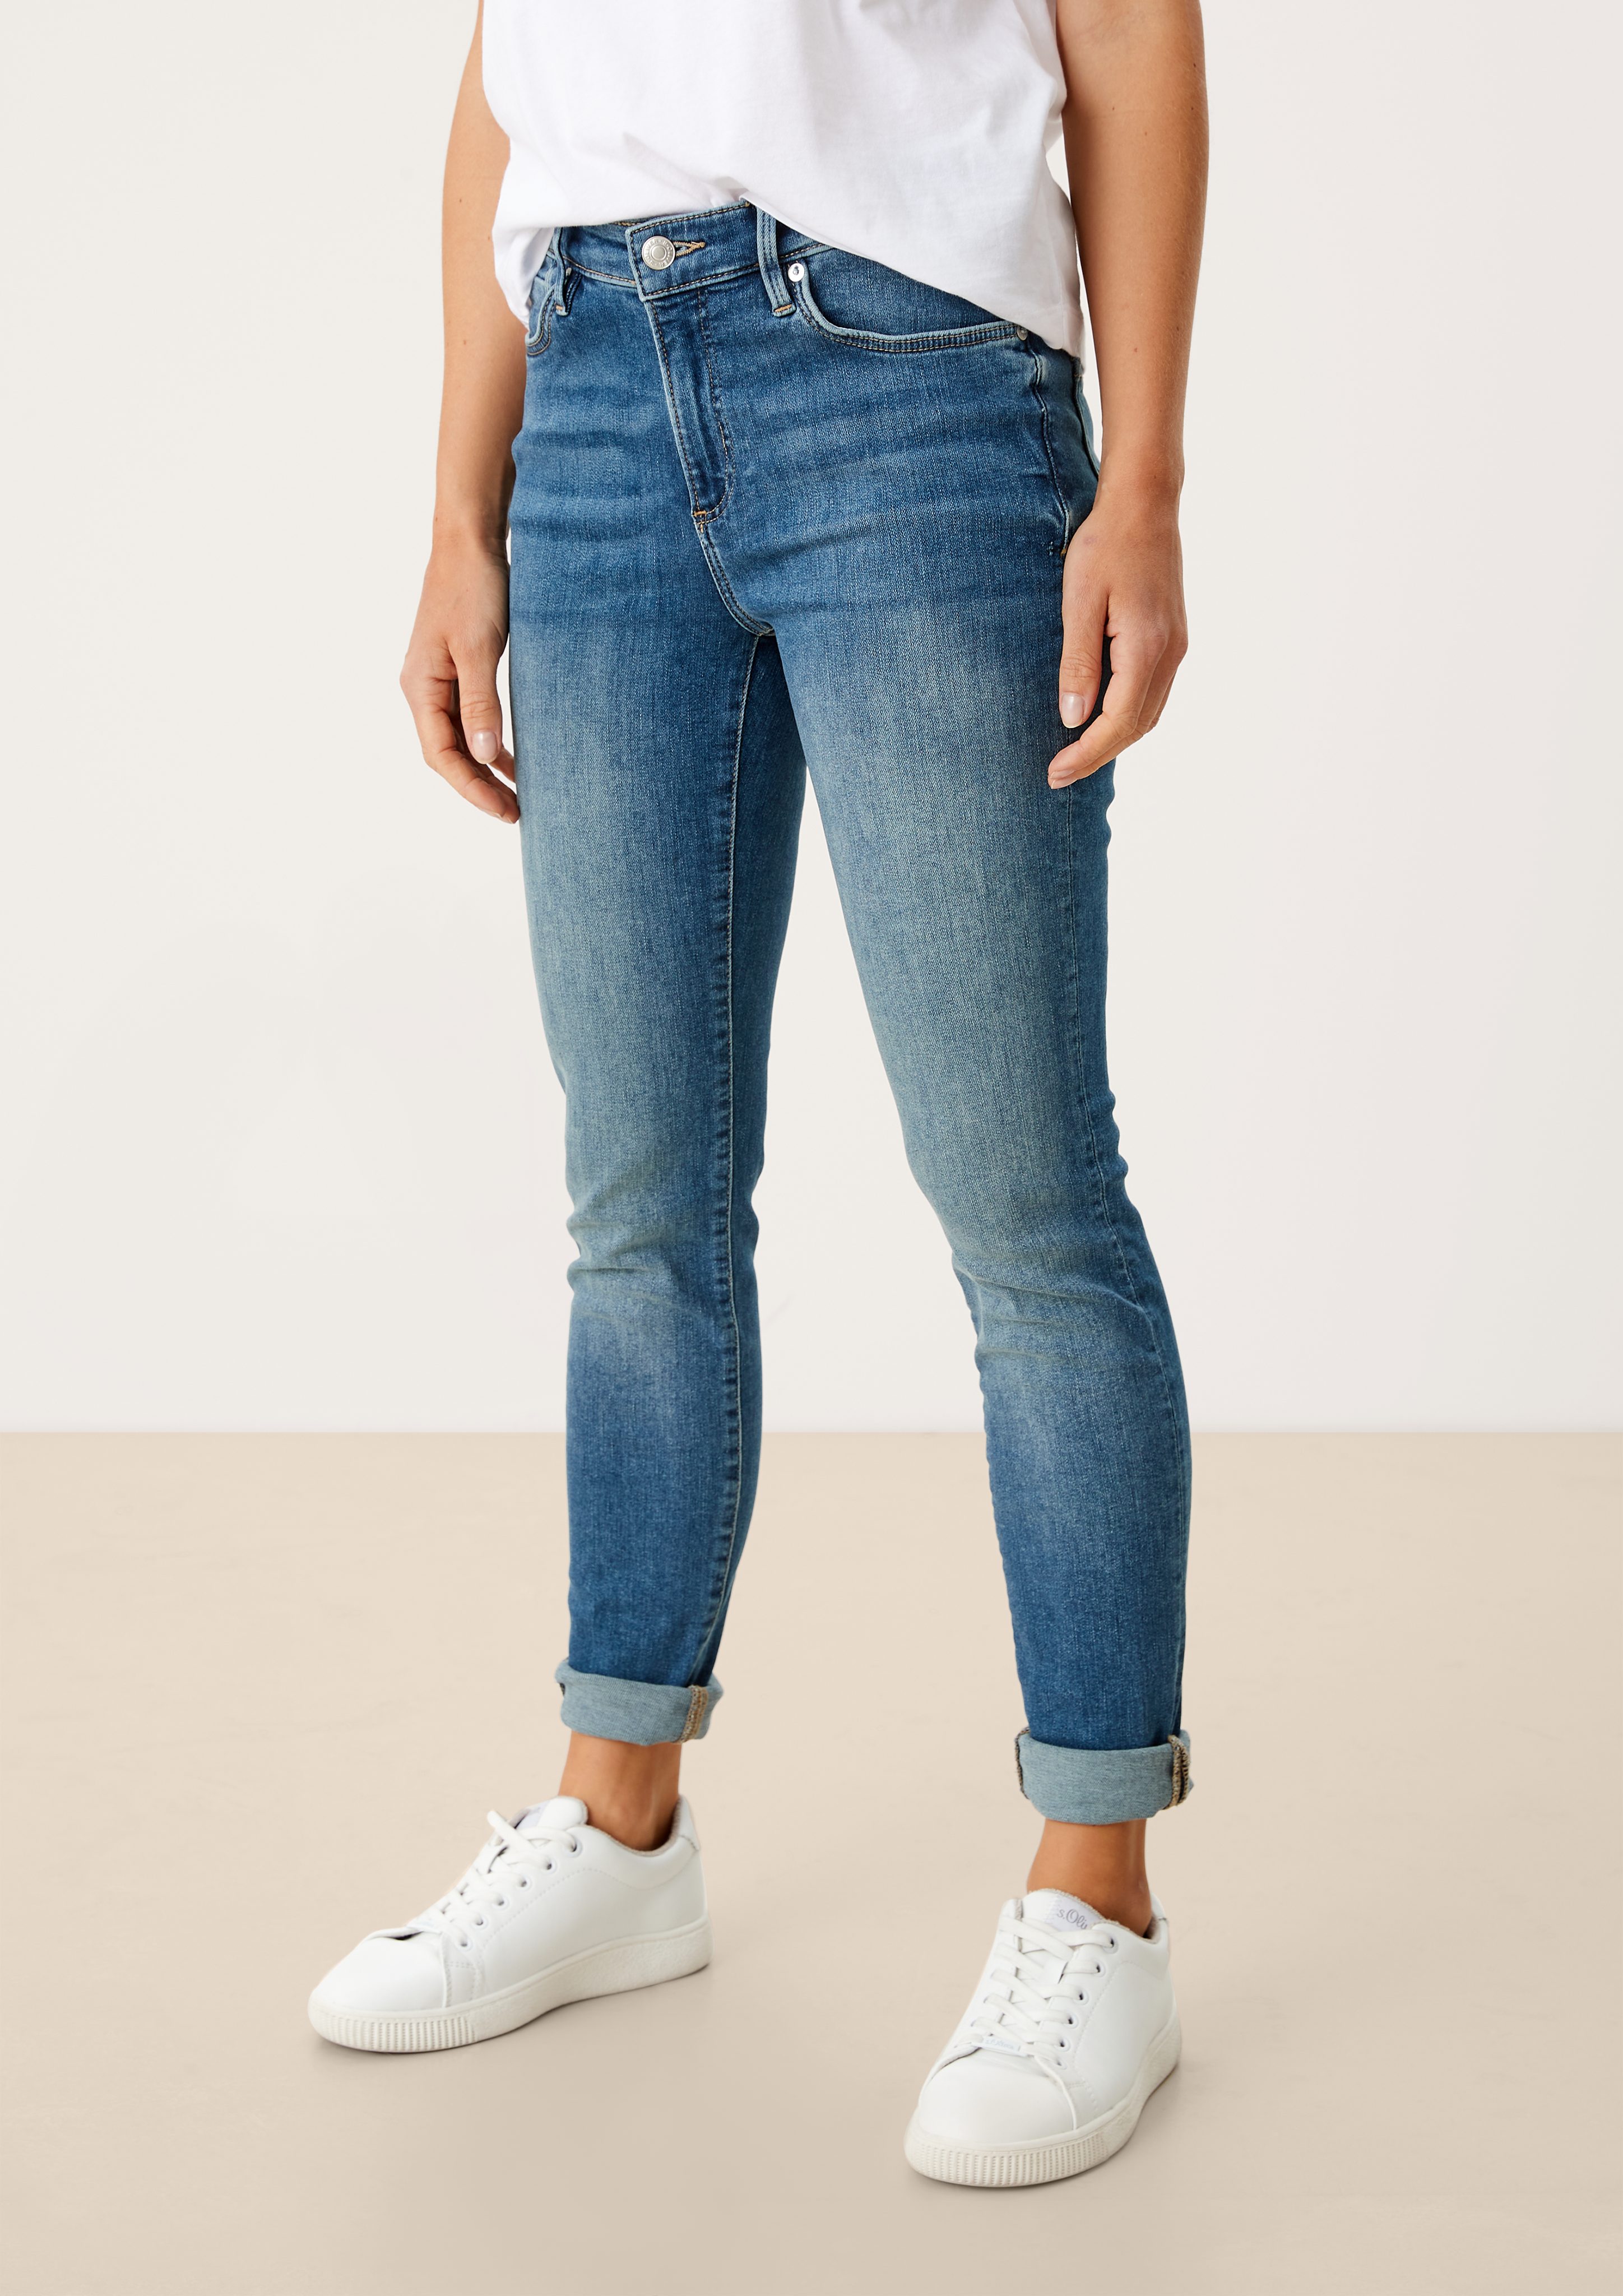 Leder-Patch, Jeans Mid 5-Pocket-Jeans medium Fit Skinny / Izabell blue Skinny s.Oliver / Waschung Leg / Rise